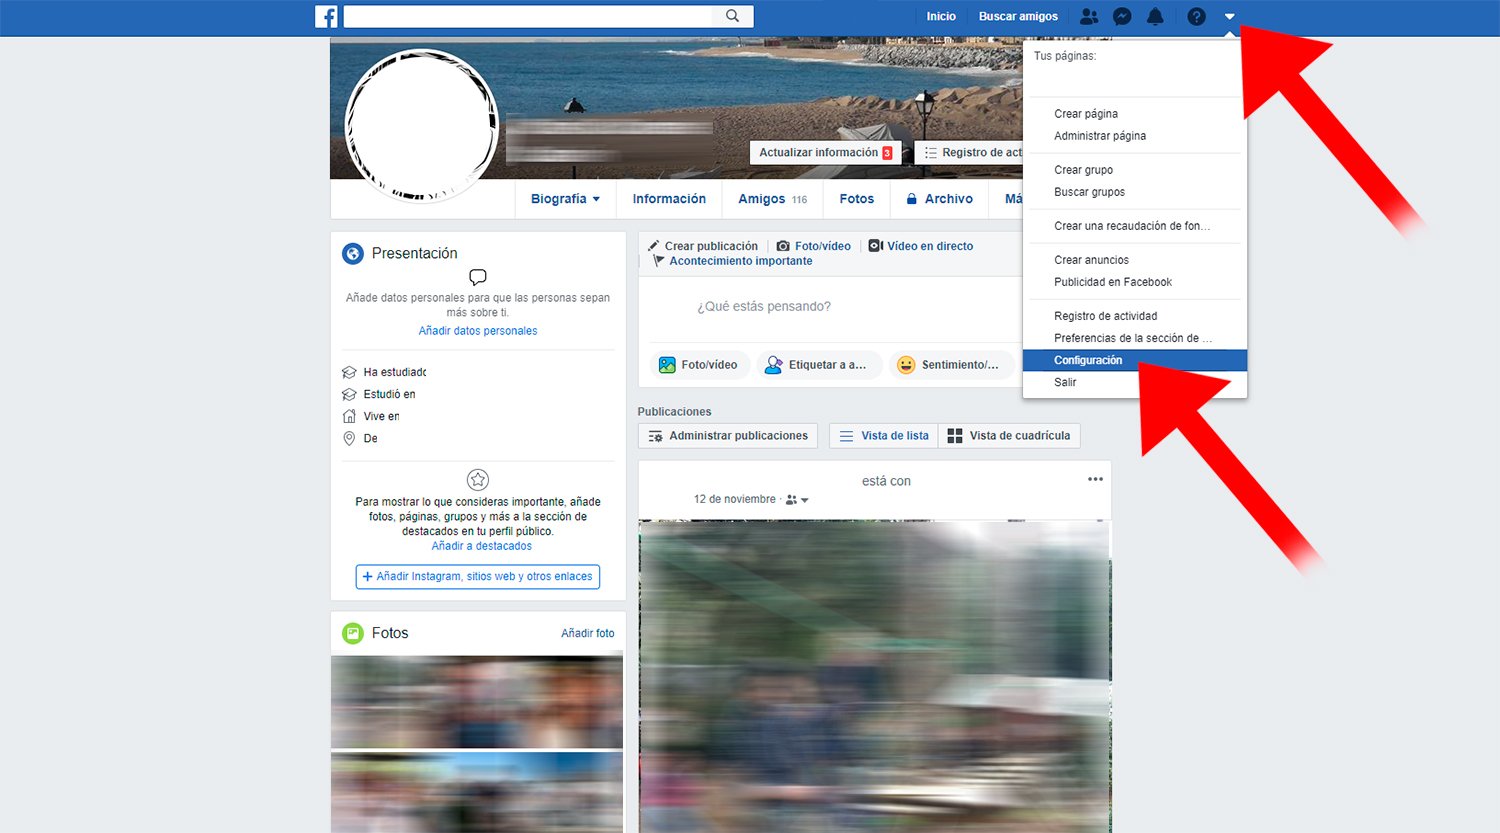 Facebook: Com eliminar el teu compte definitivament